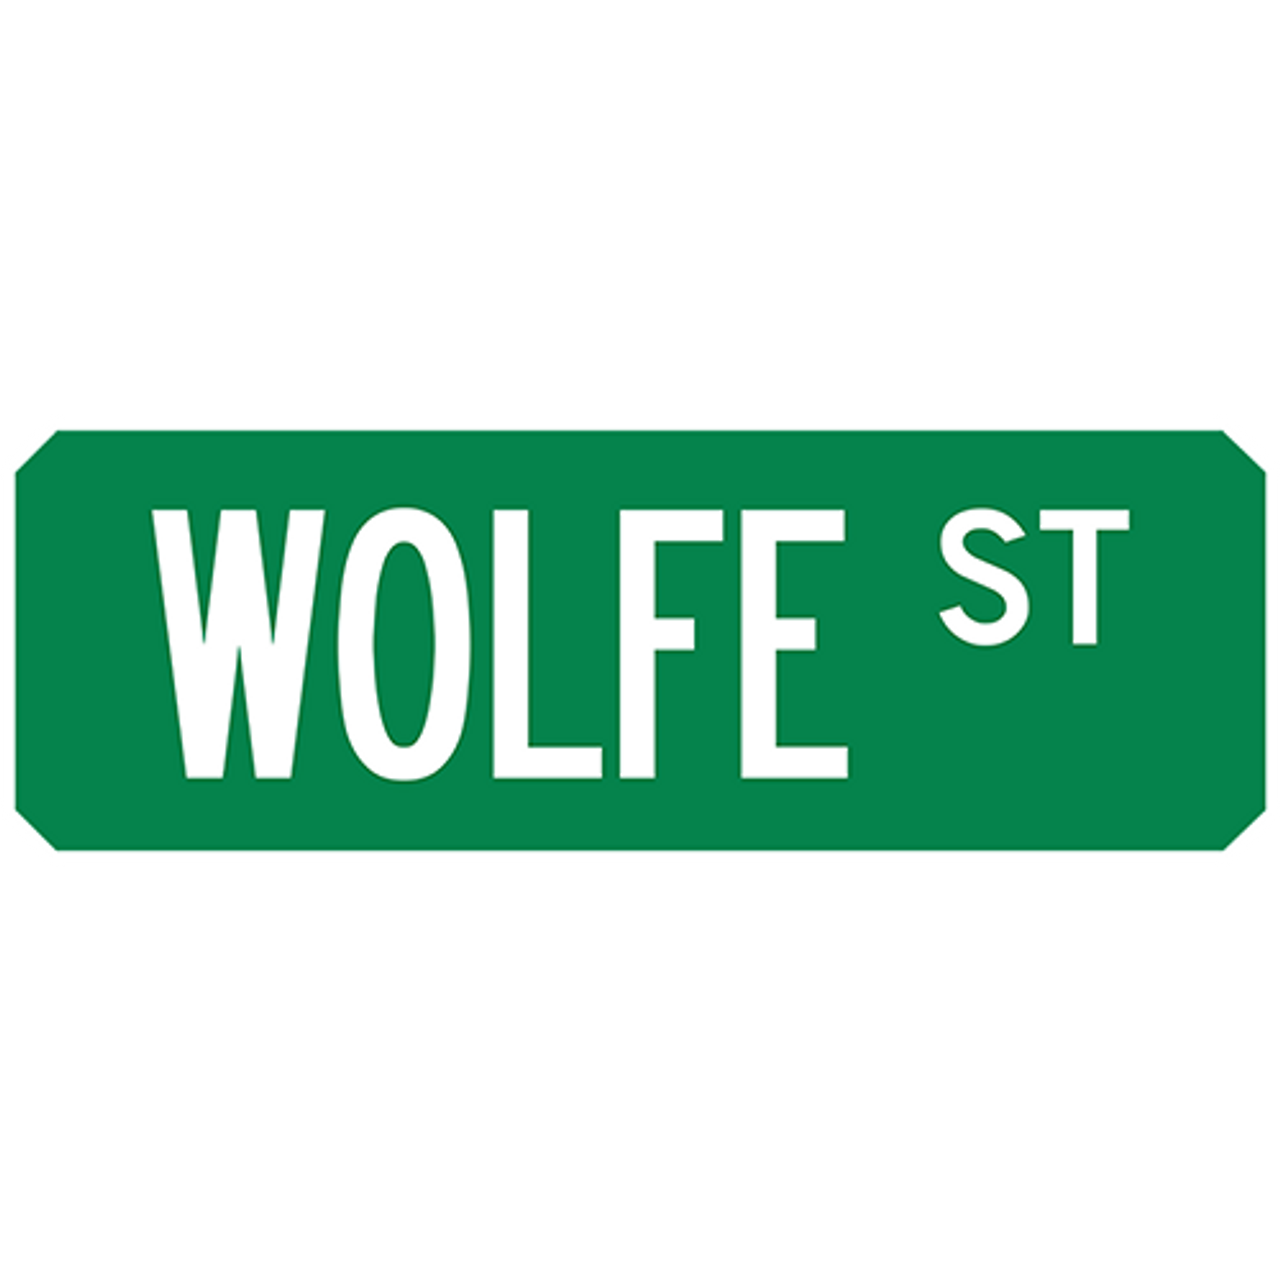 Wolfe St Street Sign Muncie